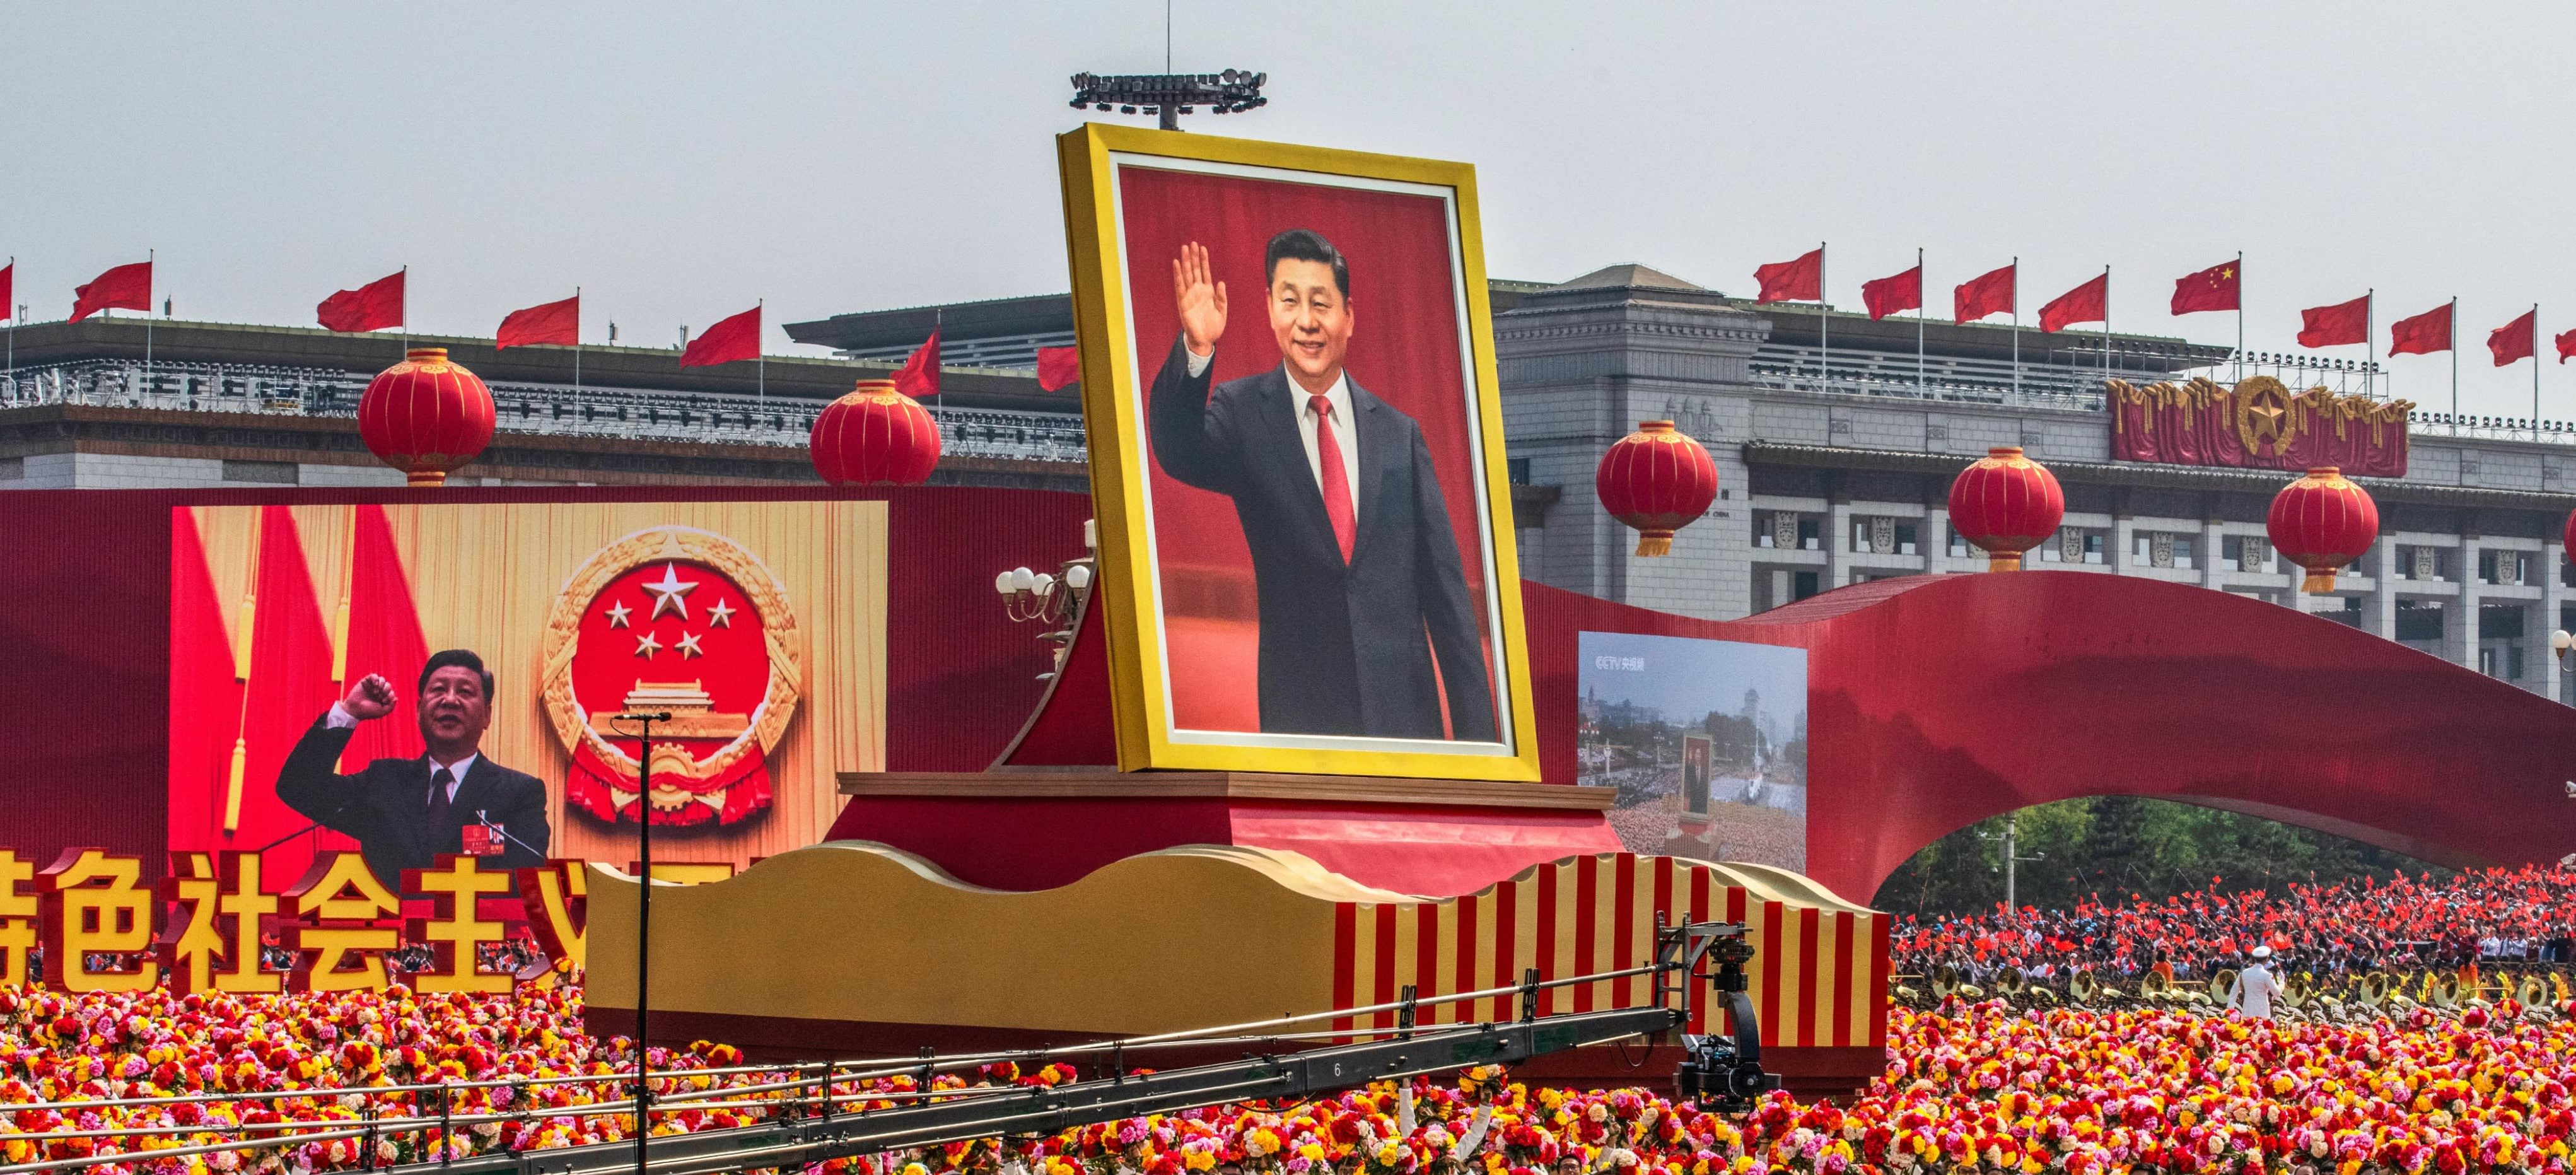 Le portrait géant du président Xi Jinping lors du défilé militaire pour les 70 ans de la République populaire, le 1er octobre 2019 à Pékin. (Source : Asia Nikkei)